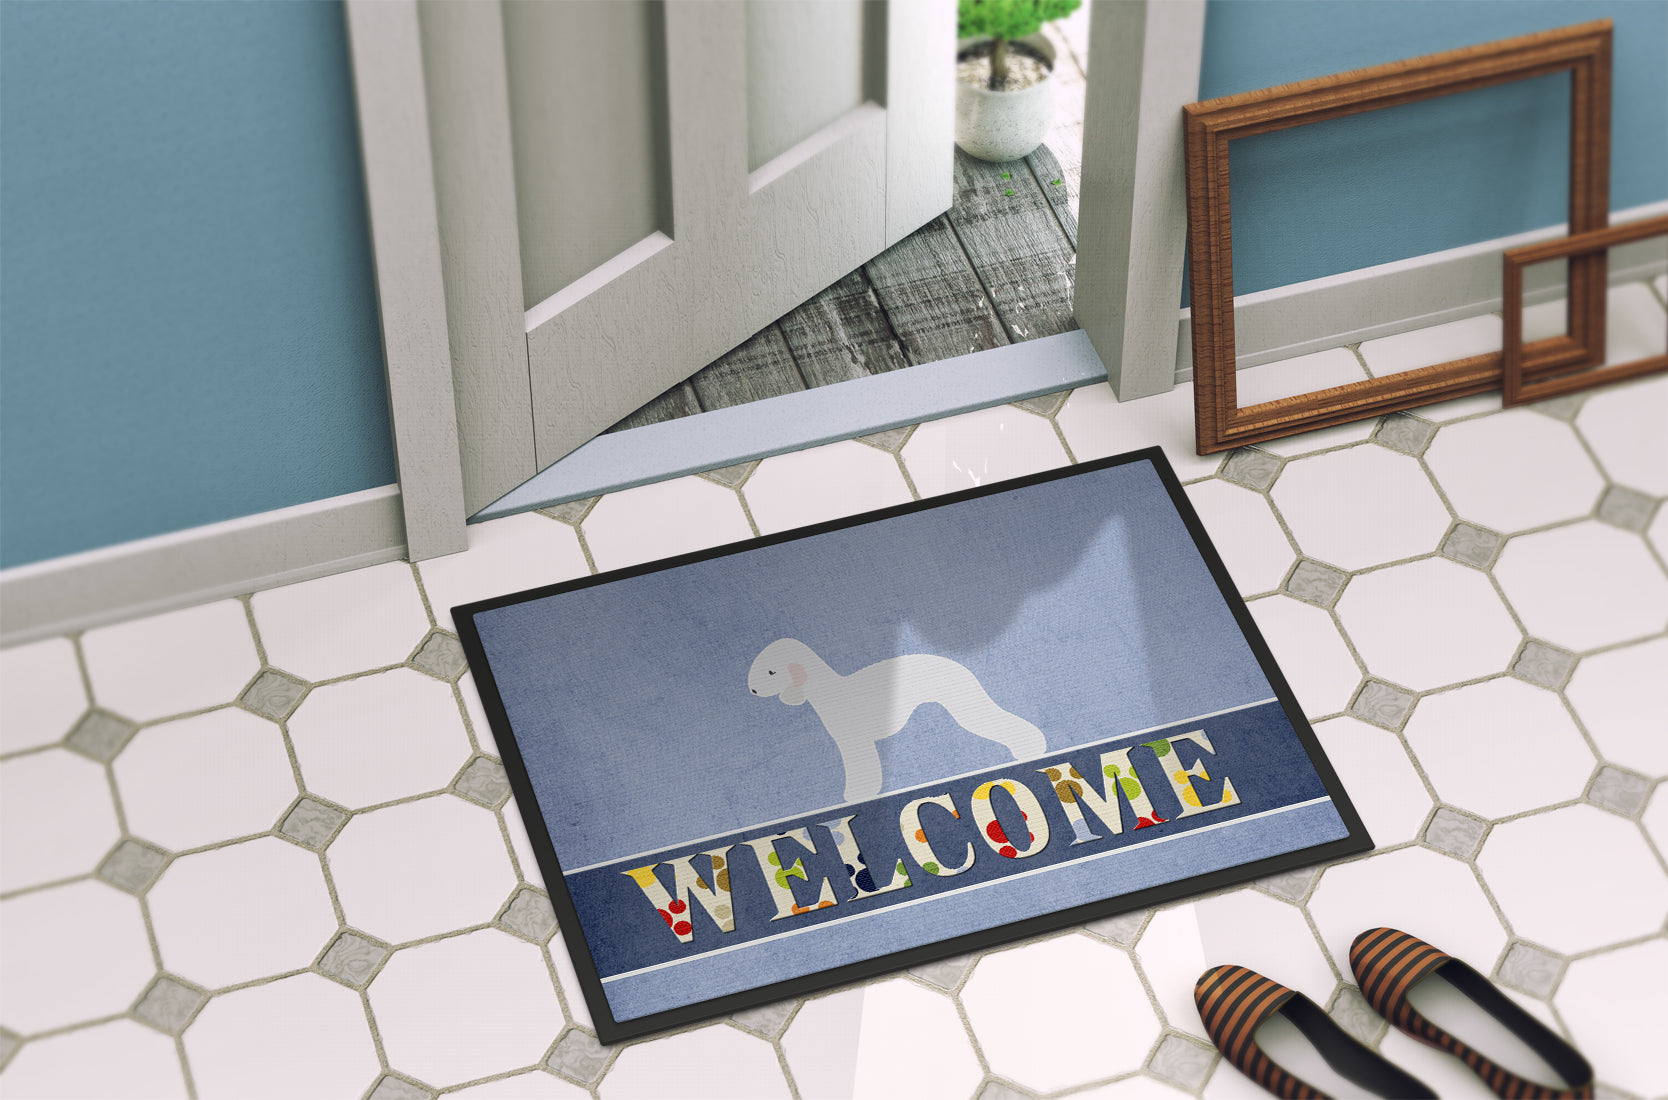 Bedlington Terrier Welcome Indoor or Outdoor Mat 18x27 BB5498MAT - the-store.com